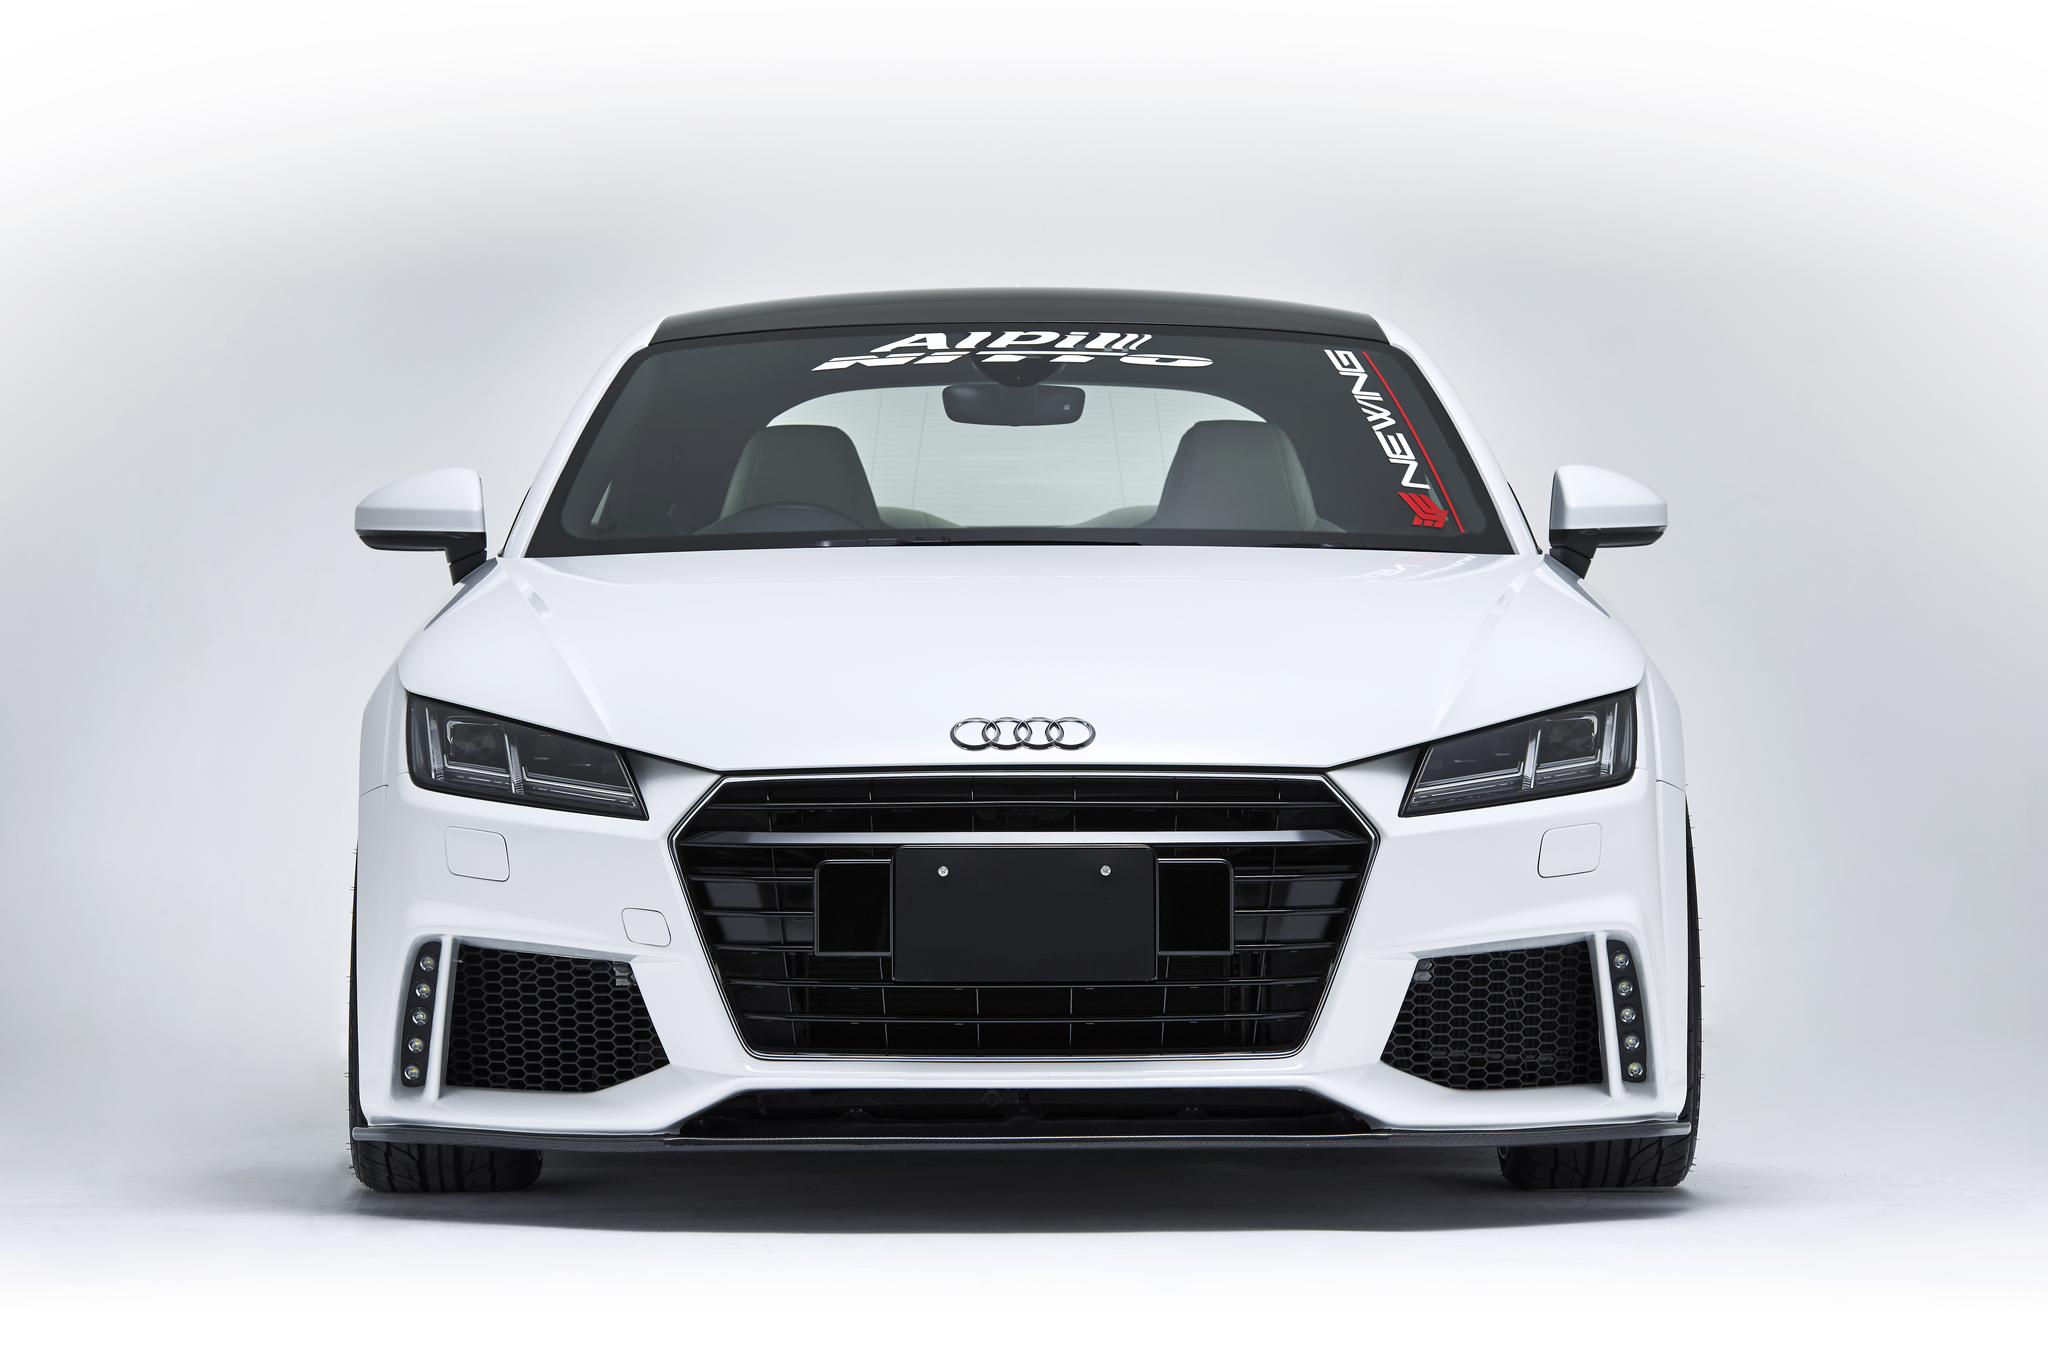 NEWING Bodi Kit for Audi TT Alpil carbon fiber